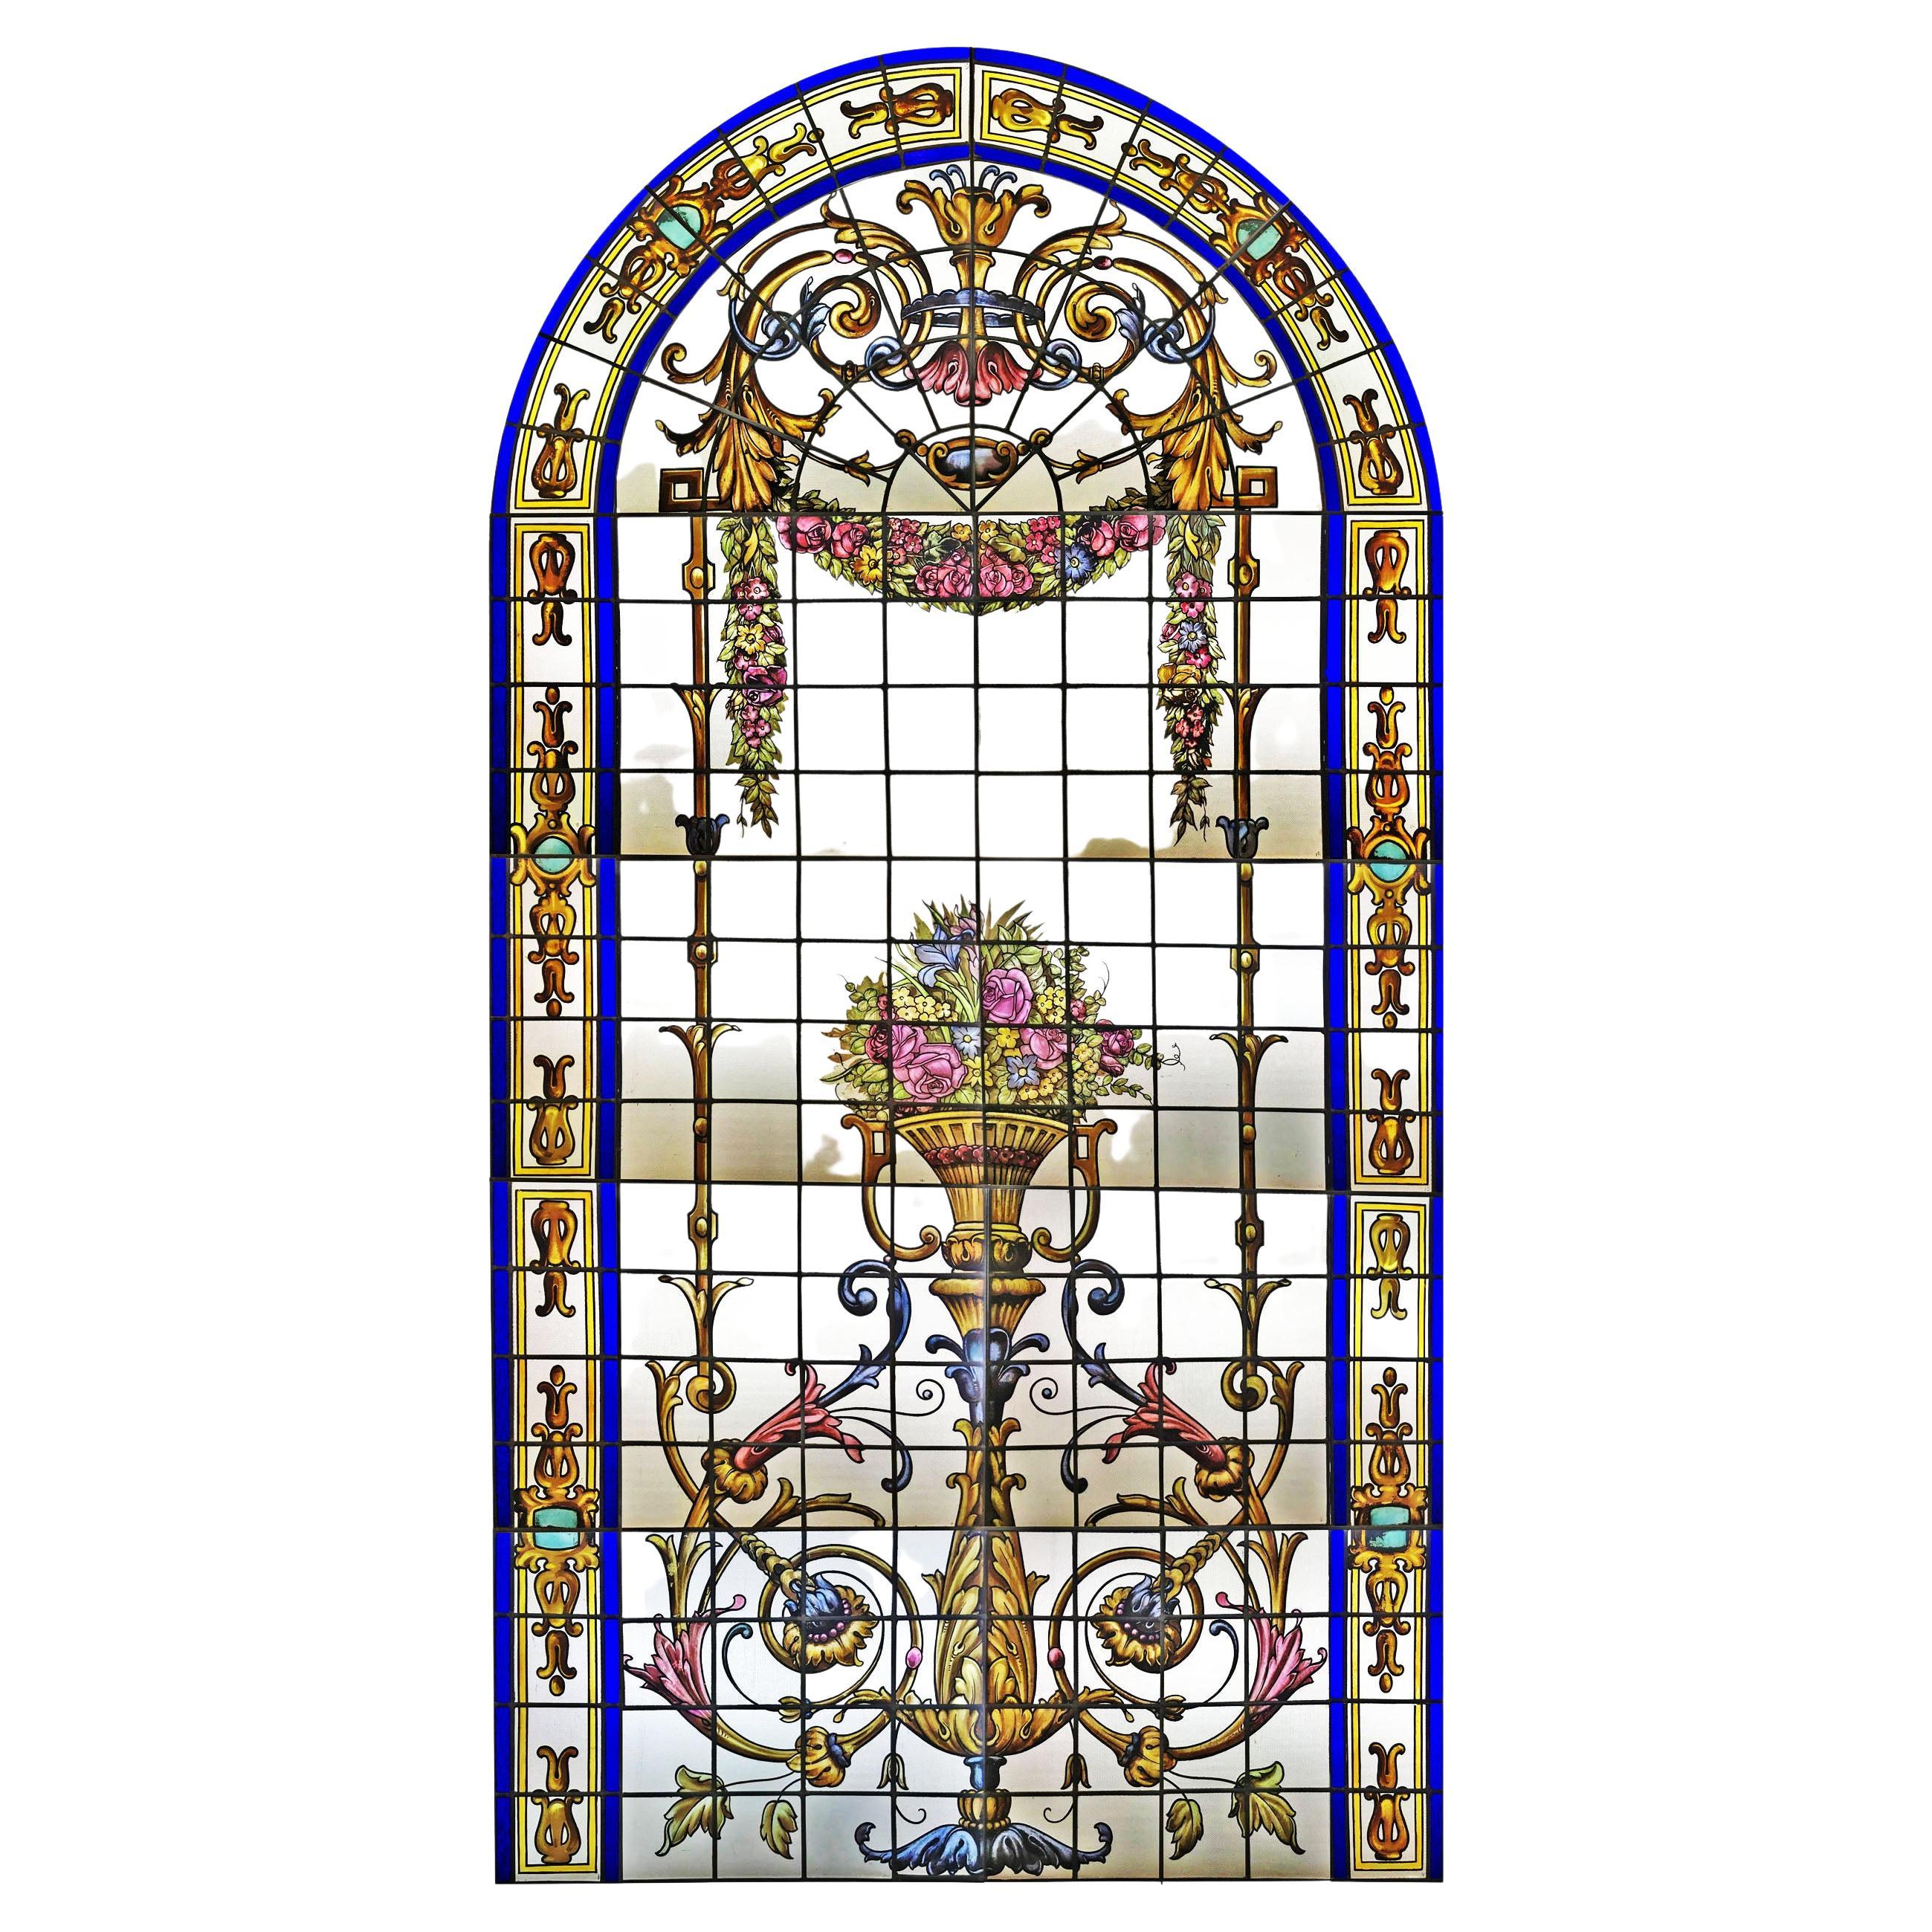 Prächtiges französisches Bleiglas-Vitraux-Fenster aus dem späten 19